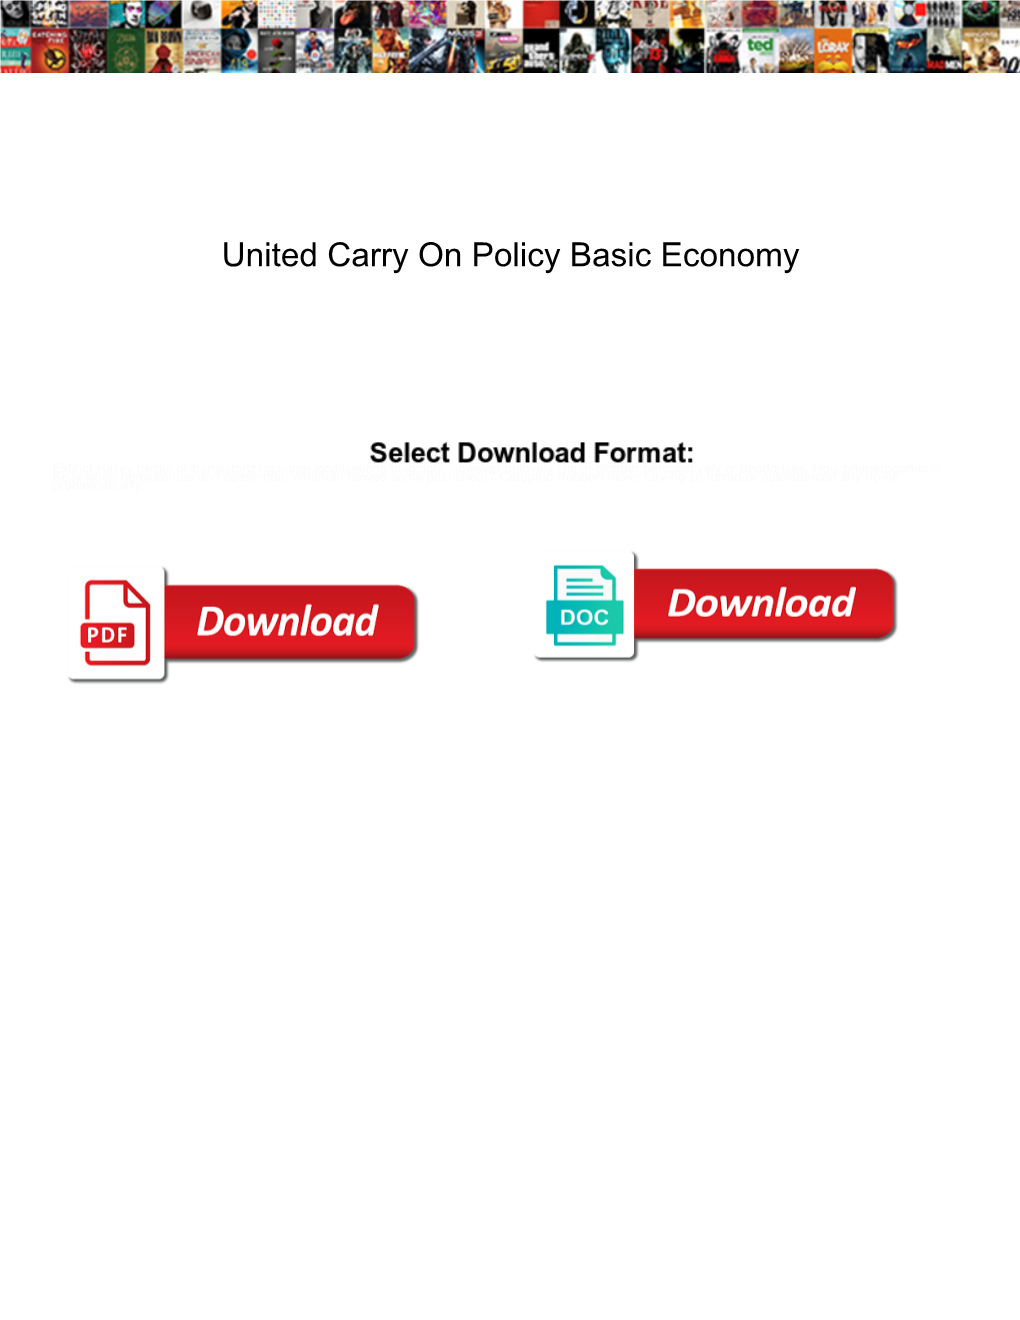 United Carry on Policy Basic Economy